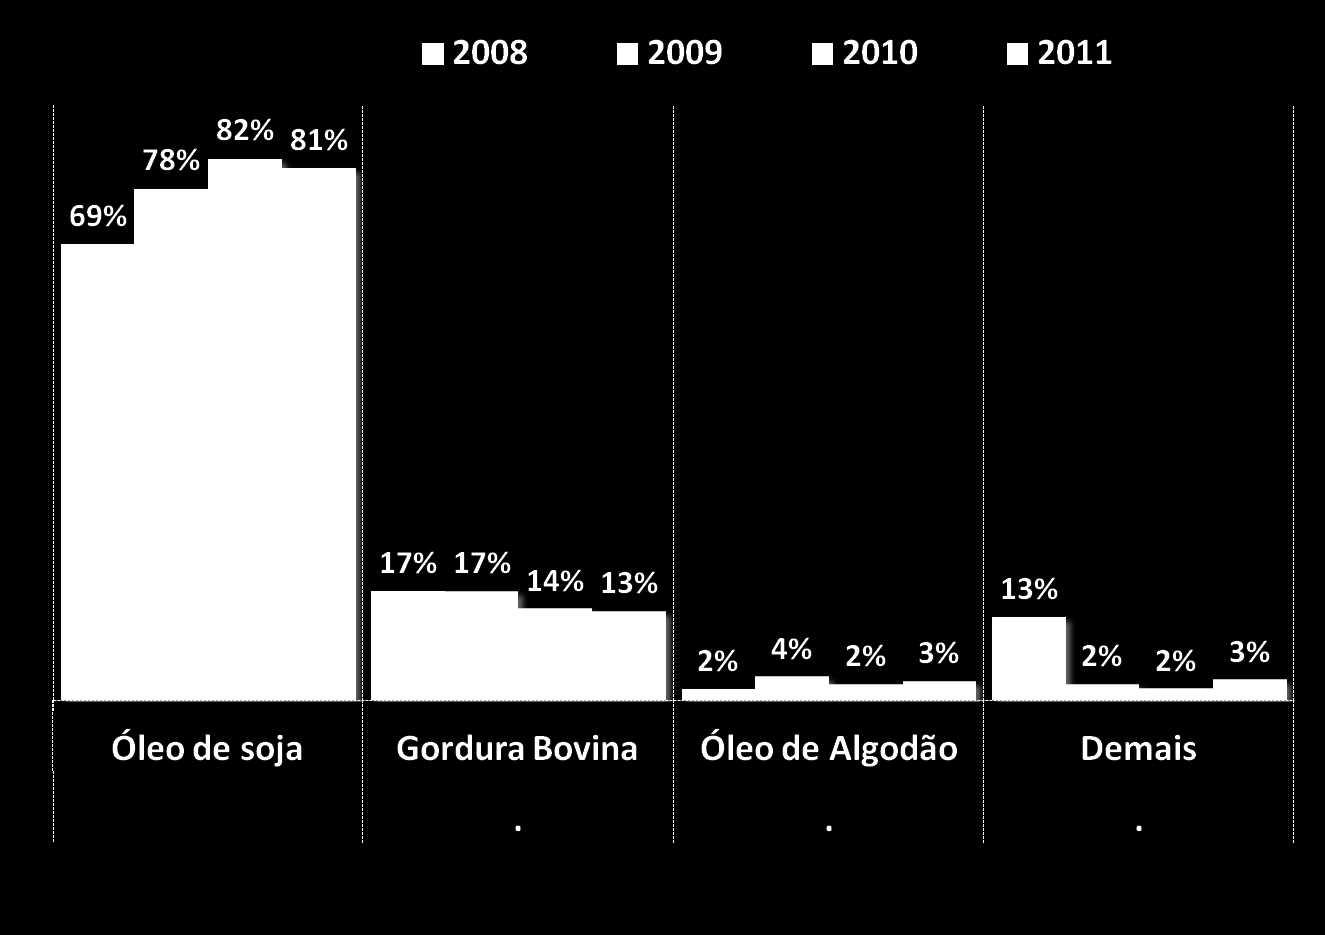 USO DE MATÉRIAS-PRIMAS PARA O BIODIESEL - 2008 a 2011 A reciclagem de óleo de